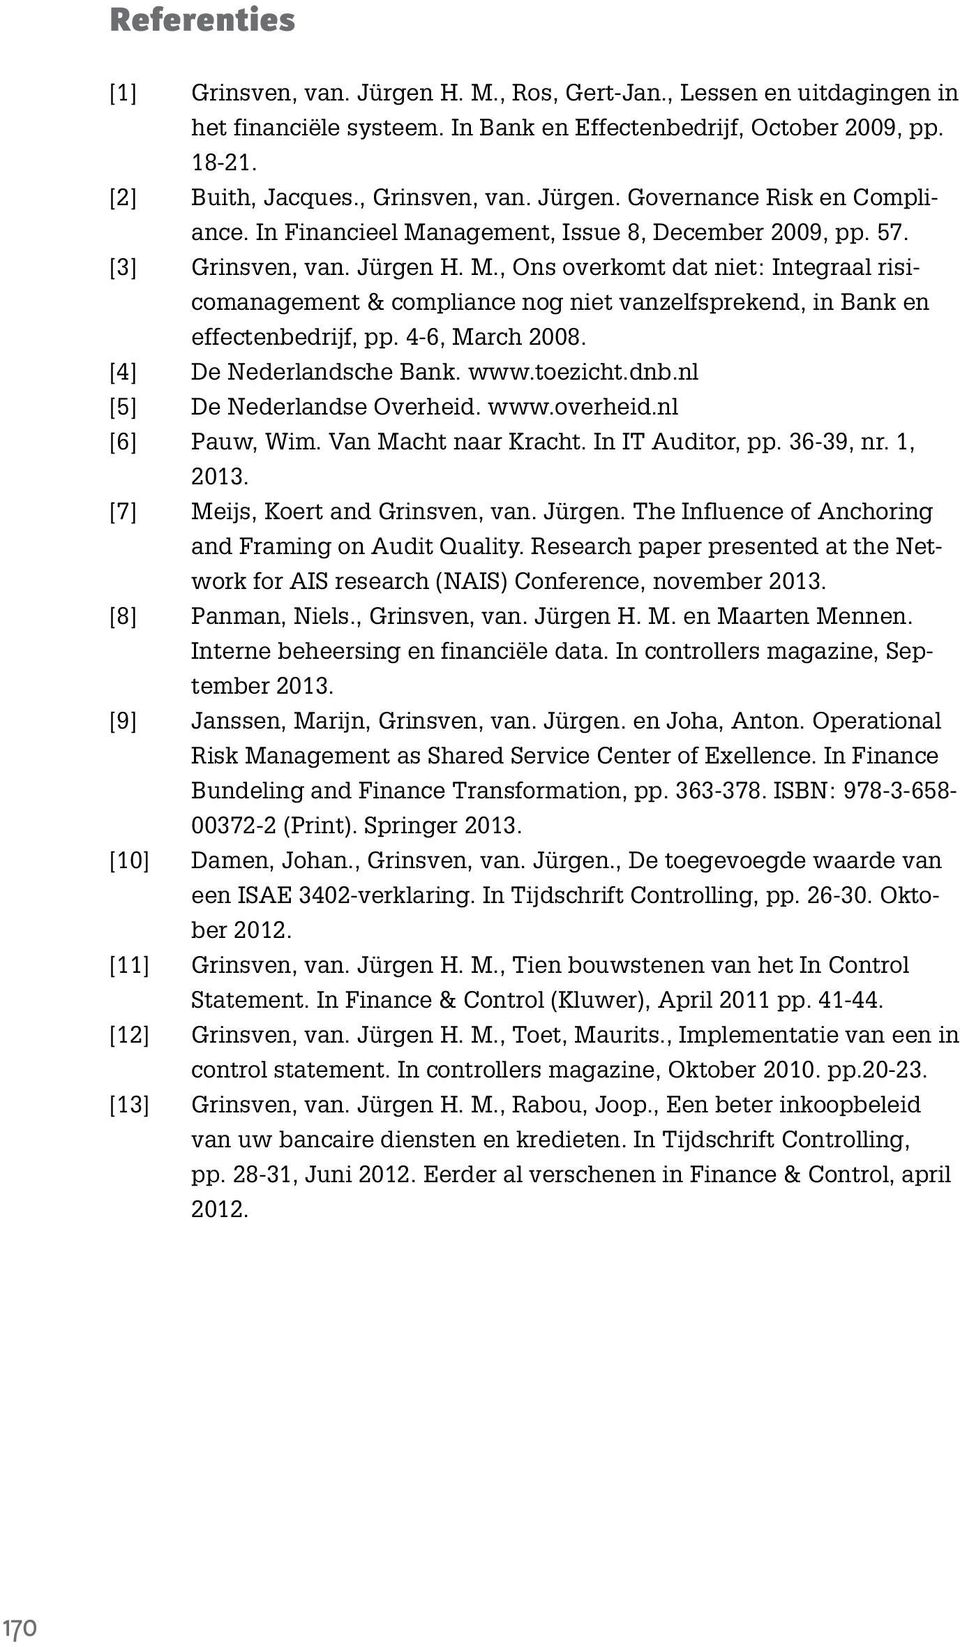 4-6, March 2008. [4] De Nederlandsche Bank. www.toezicht.dnb.nl [5] De Nederlandse Overheid. www.overheid.nl [6] Pauw, Wim. Van Macht naar Kracht. In IT Auditor, pp. 36-39, nr. 1, 2013.